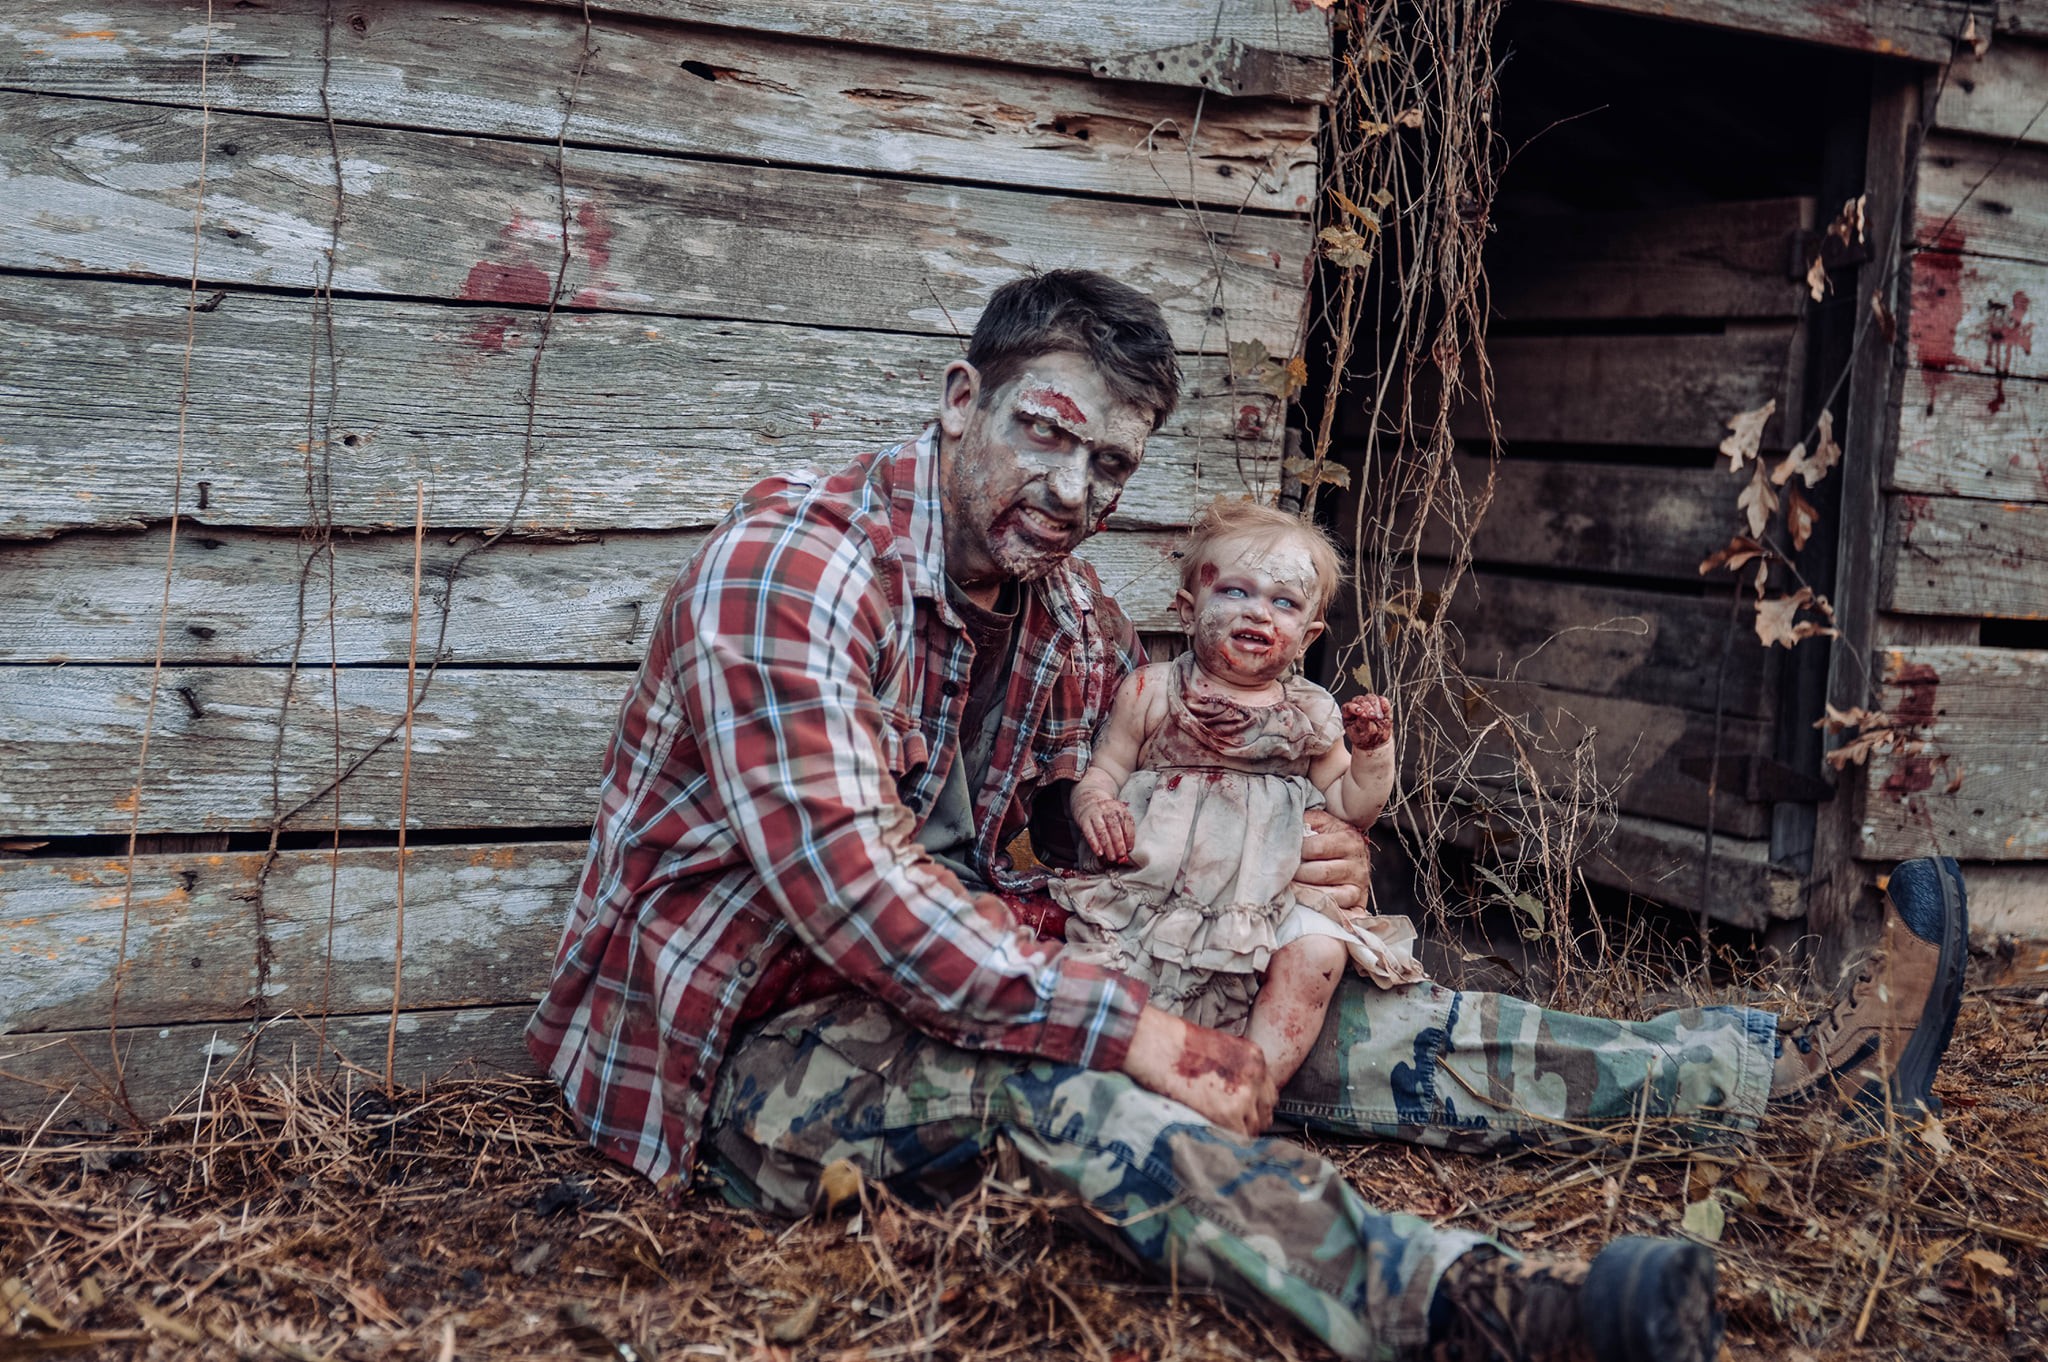 Daniel Renfroe escolheu o tema zumbi para a sessão de fotos com sua filha mais nova, Oakley, de 11 meses (Foto: Tifflynn Photography)